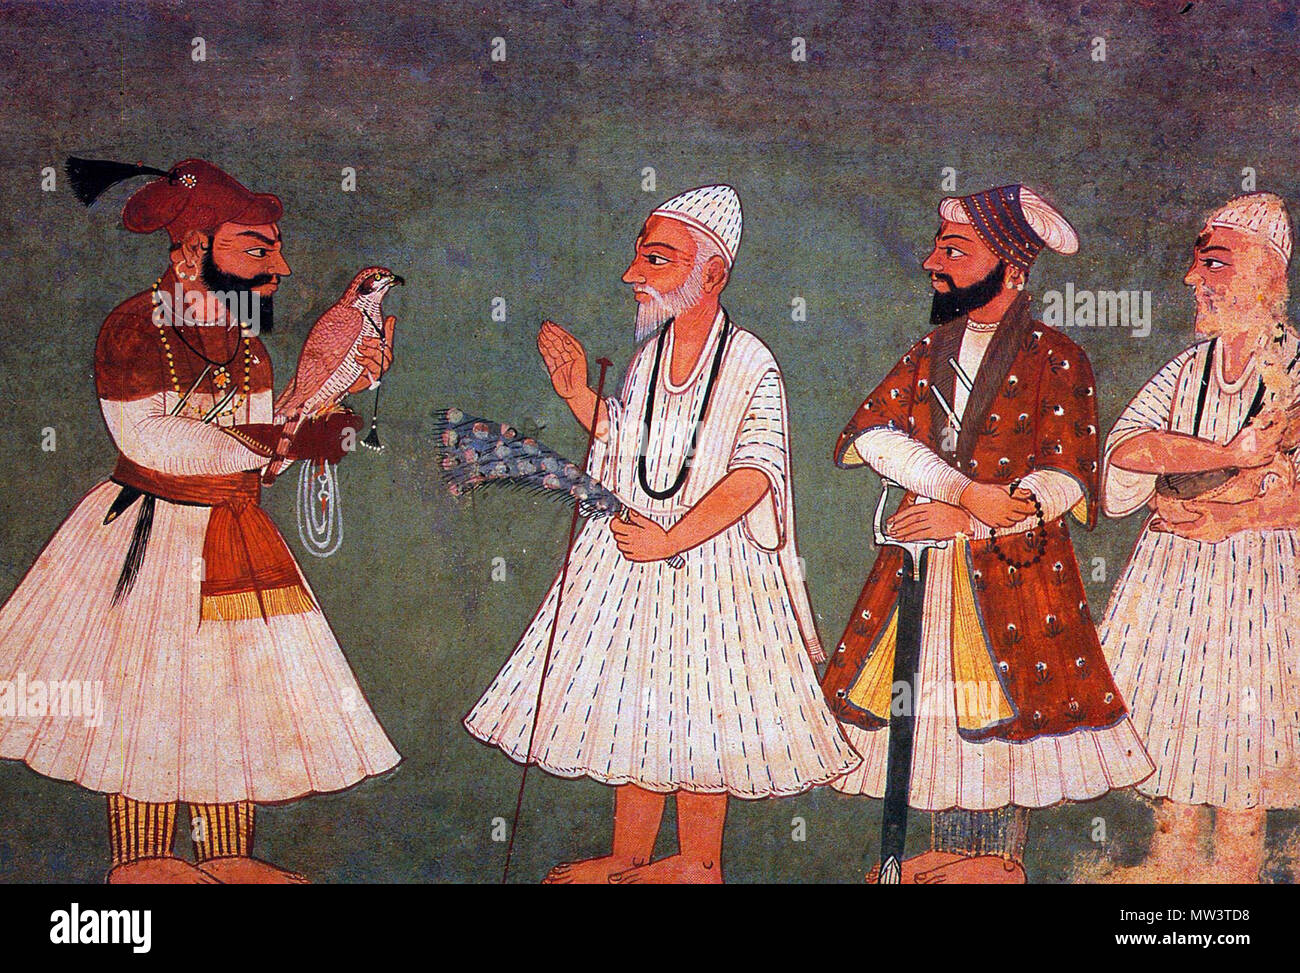 . Guru Gobind Singh (oiseau) rencontre avec le gourou Nanak Dev. Une peinture du 18ème siècle d'une réunion imaginaire. 18e siècle. Inconnu 257 Guru Gobind Singh répond à Guru Nanak Dev Banque D'Images